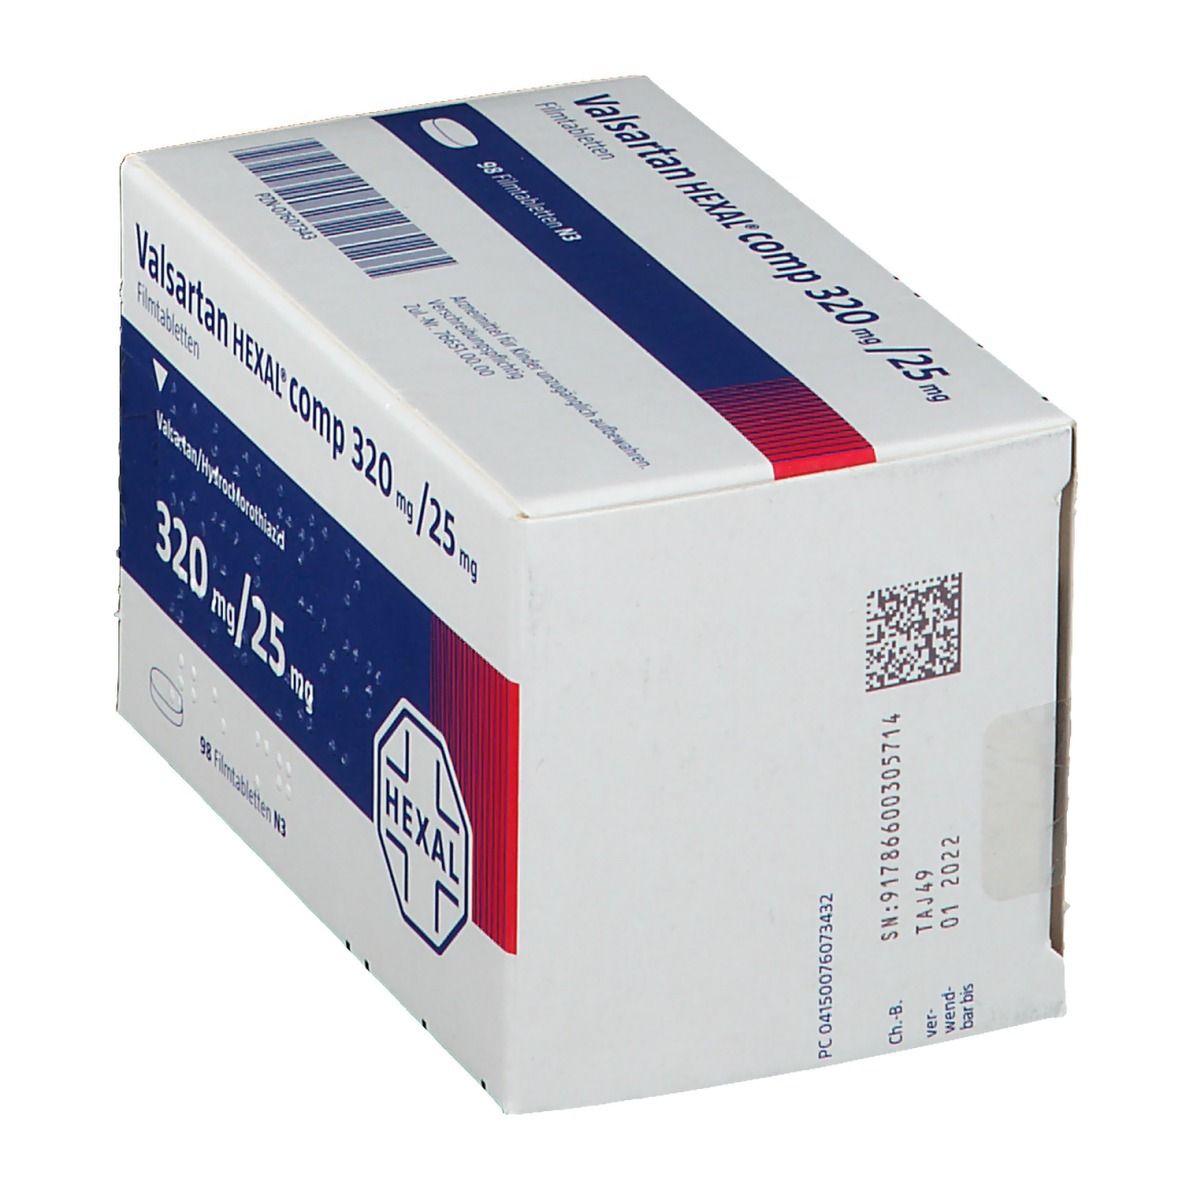 Valsartan HEXAL® comp 320 mg/25 mg